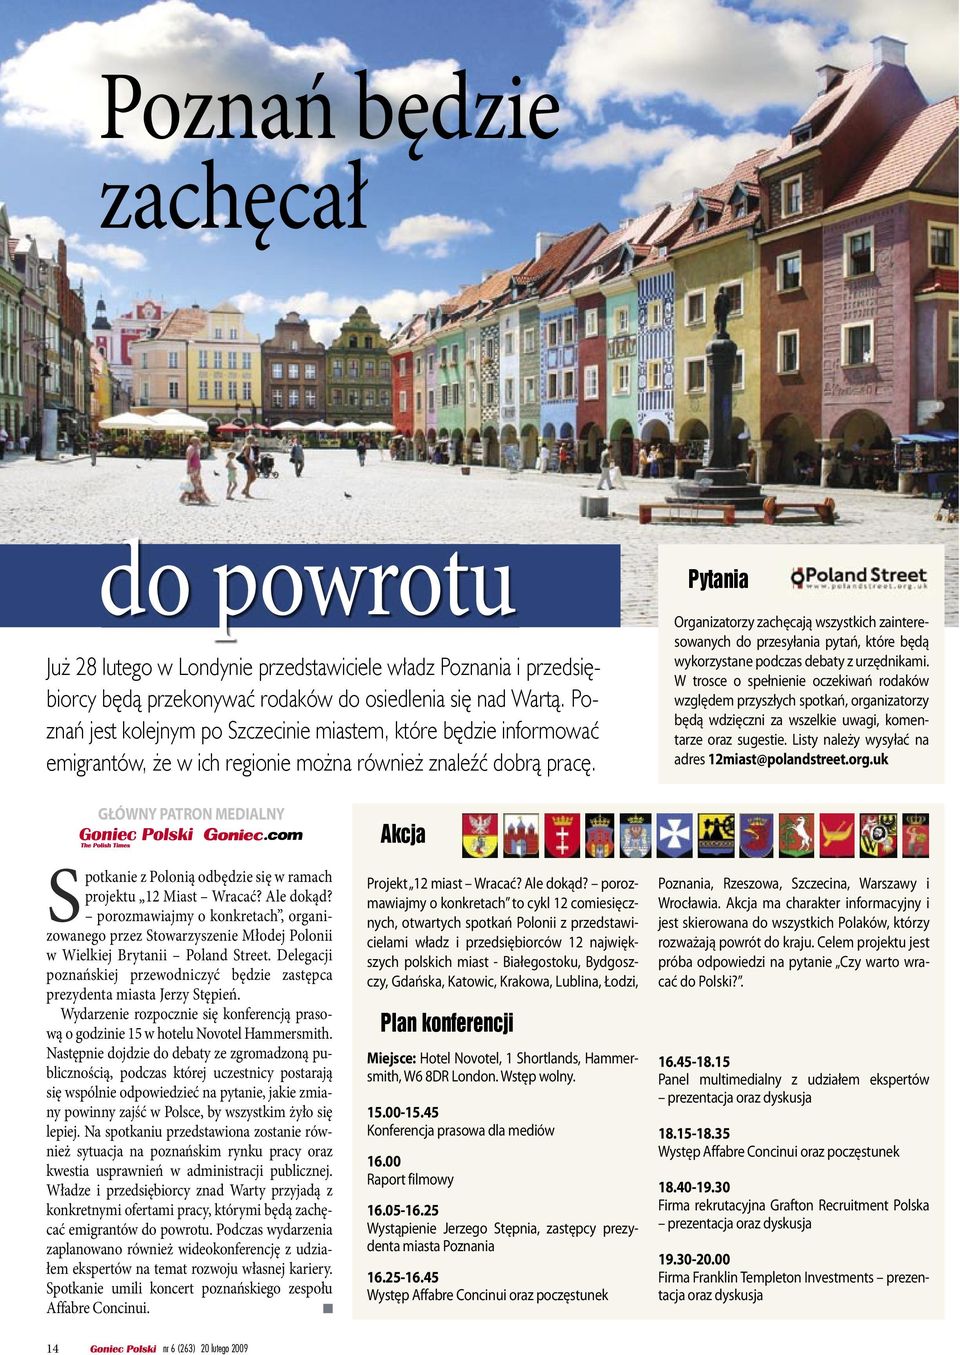 Poznań jest kolejnym po Szczecinie miastem, które będzie informować emigrantów, że w ich